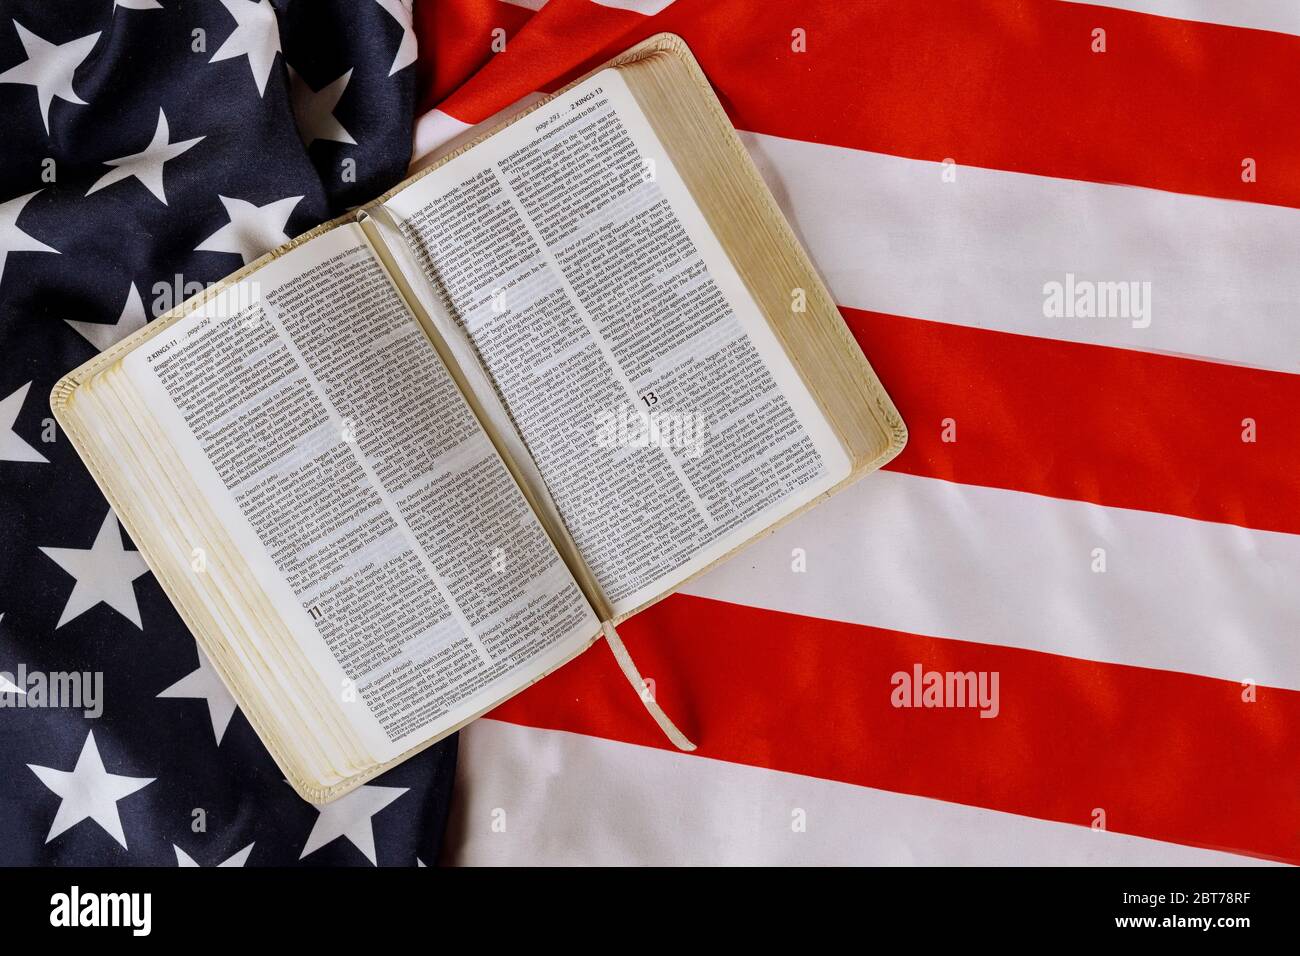 Los Angeles CA US 16 MAI 2020: Drapeau américain avec la Bible du livre Saint ouverte en lecture avec la prière pour l'amérique sur le drapeau américain Banque D'Images